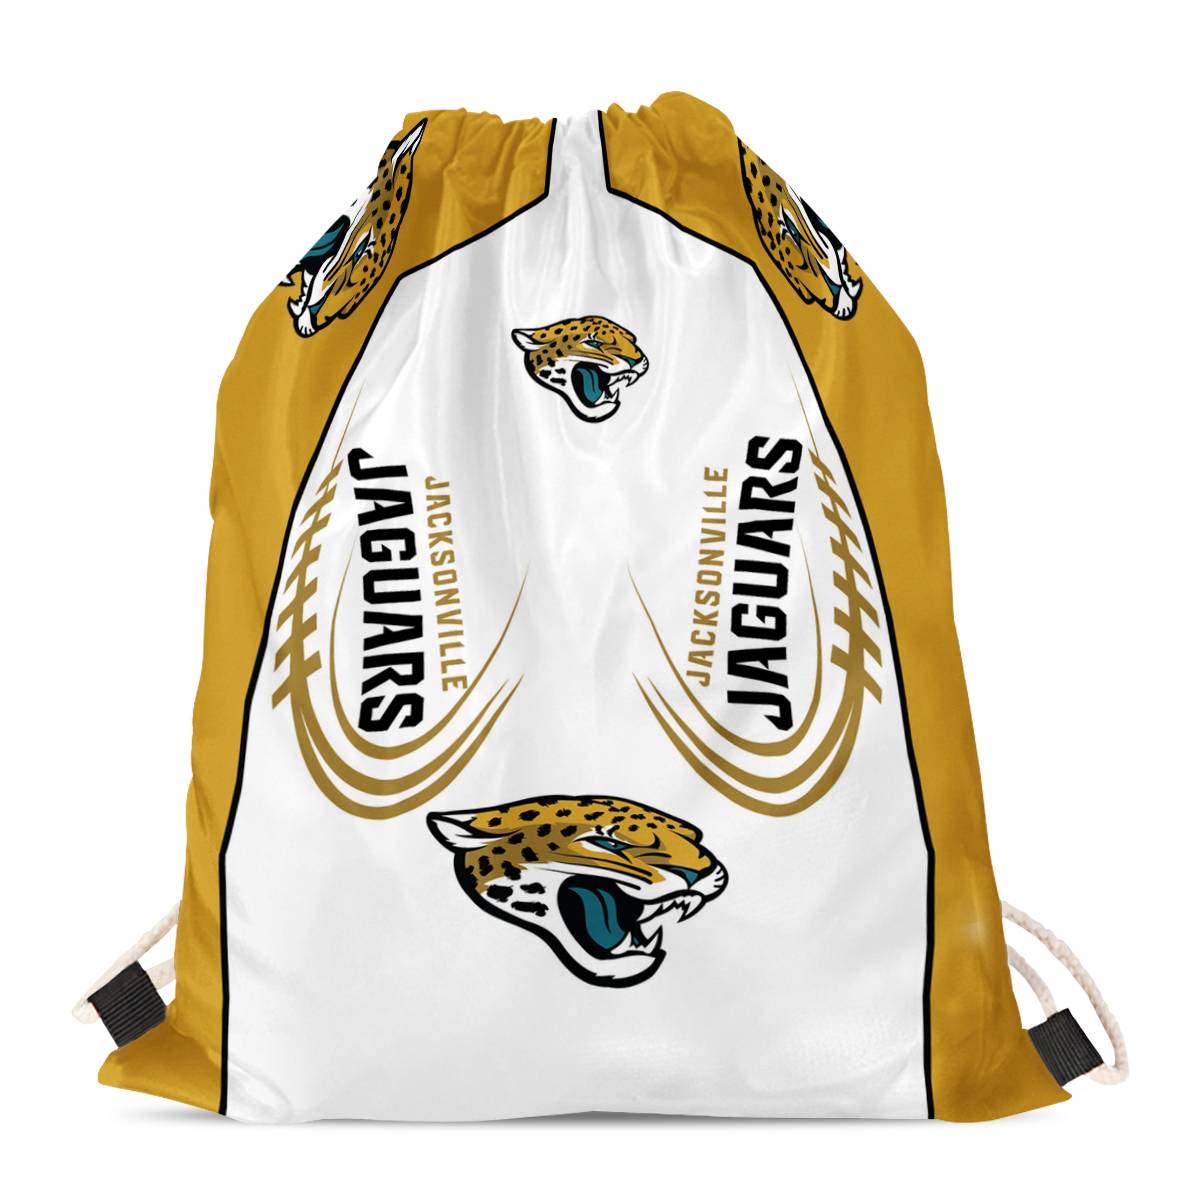 Jacksonville Jaguars Drawstring Backpack sack / Gym bag 18" x 14" 001